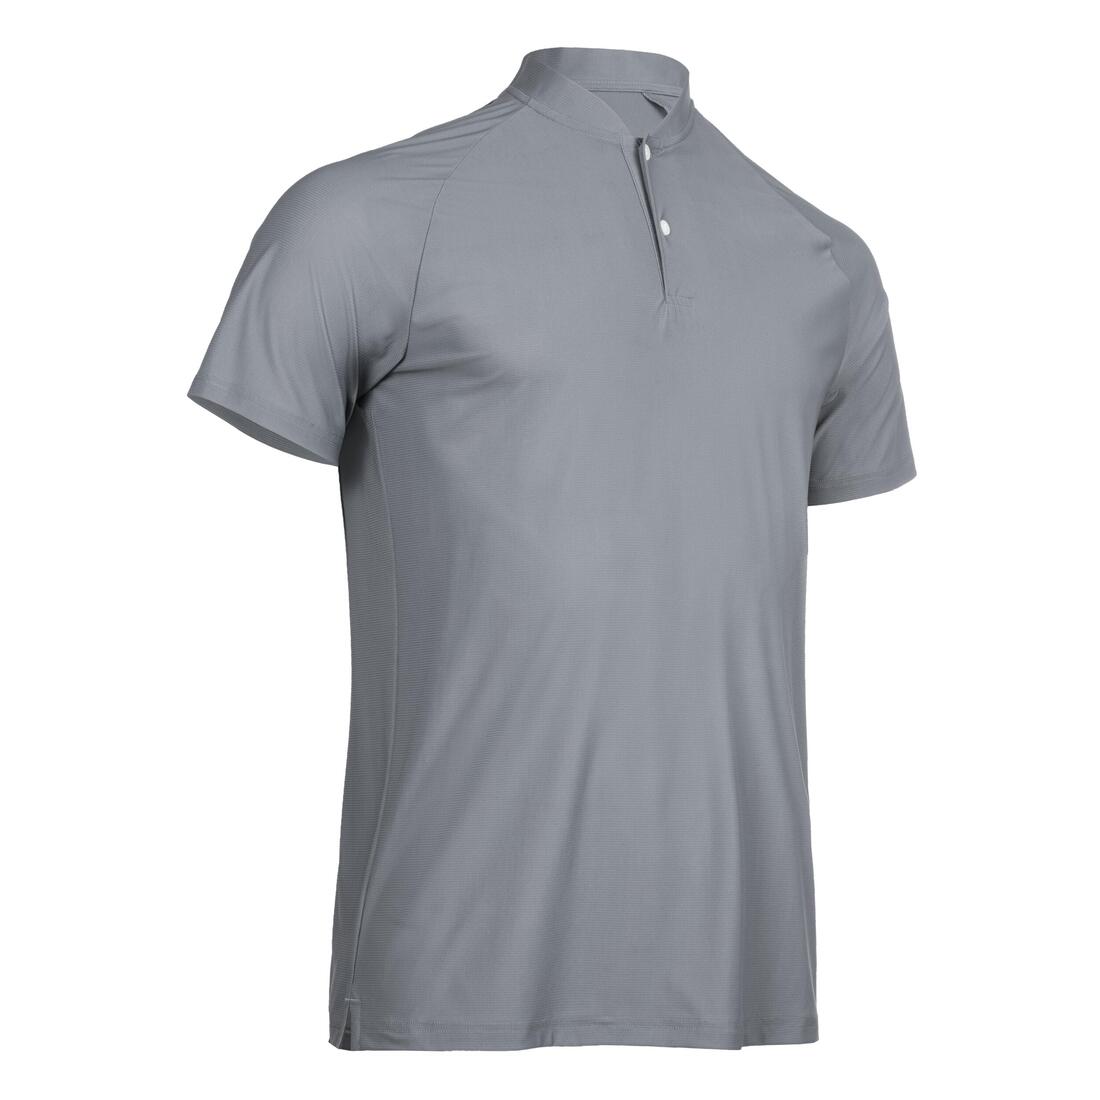 INESIS(イネジス) ゴルフ ウルトラライト ポロシャツ メンズ